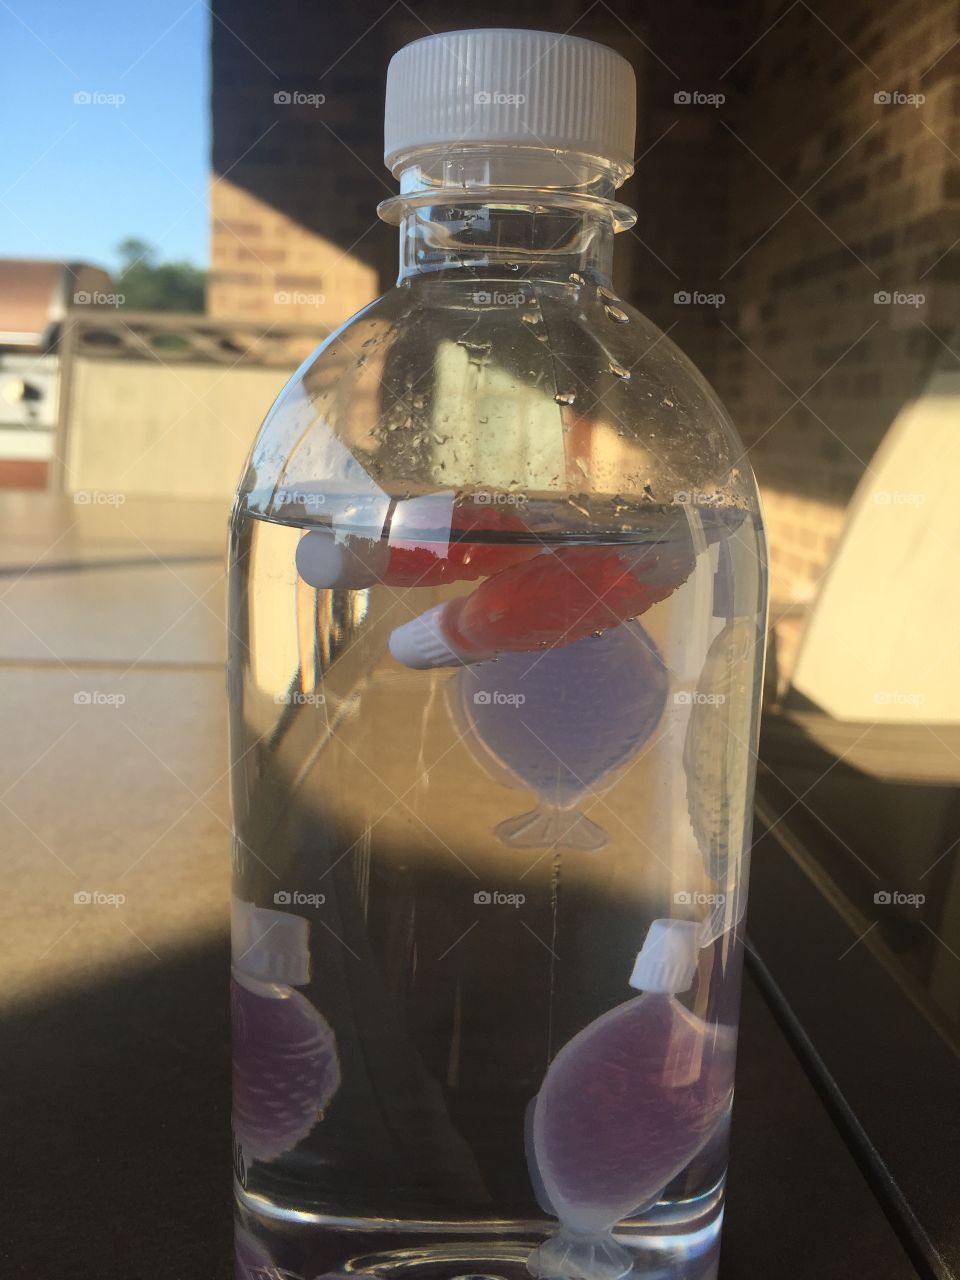 Fish in a bottle